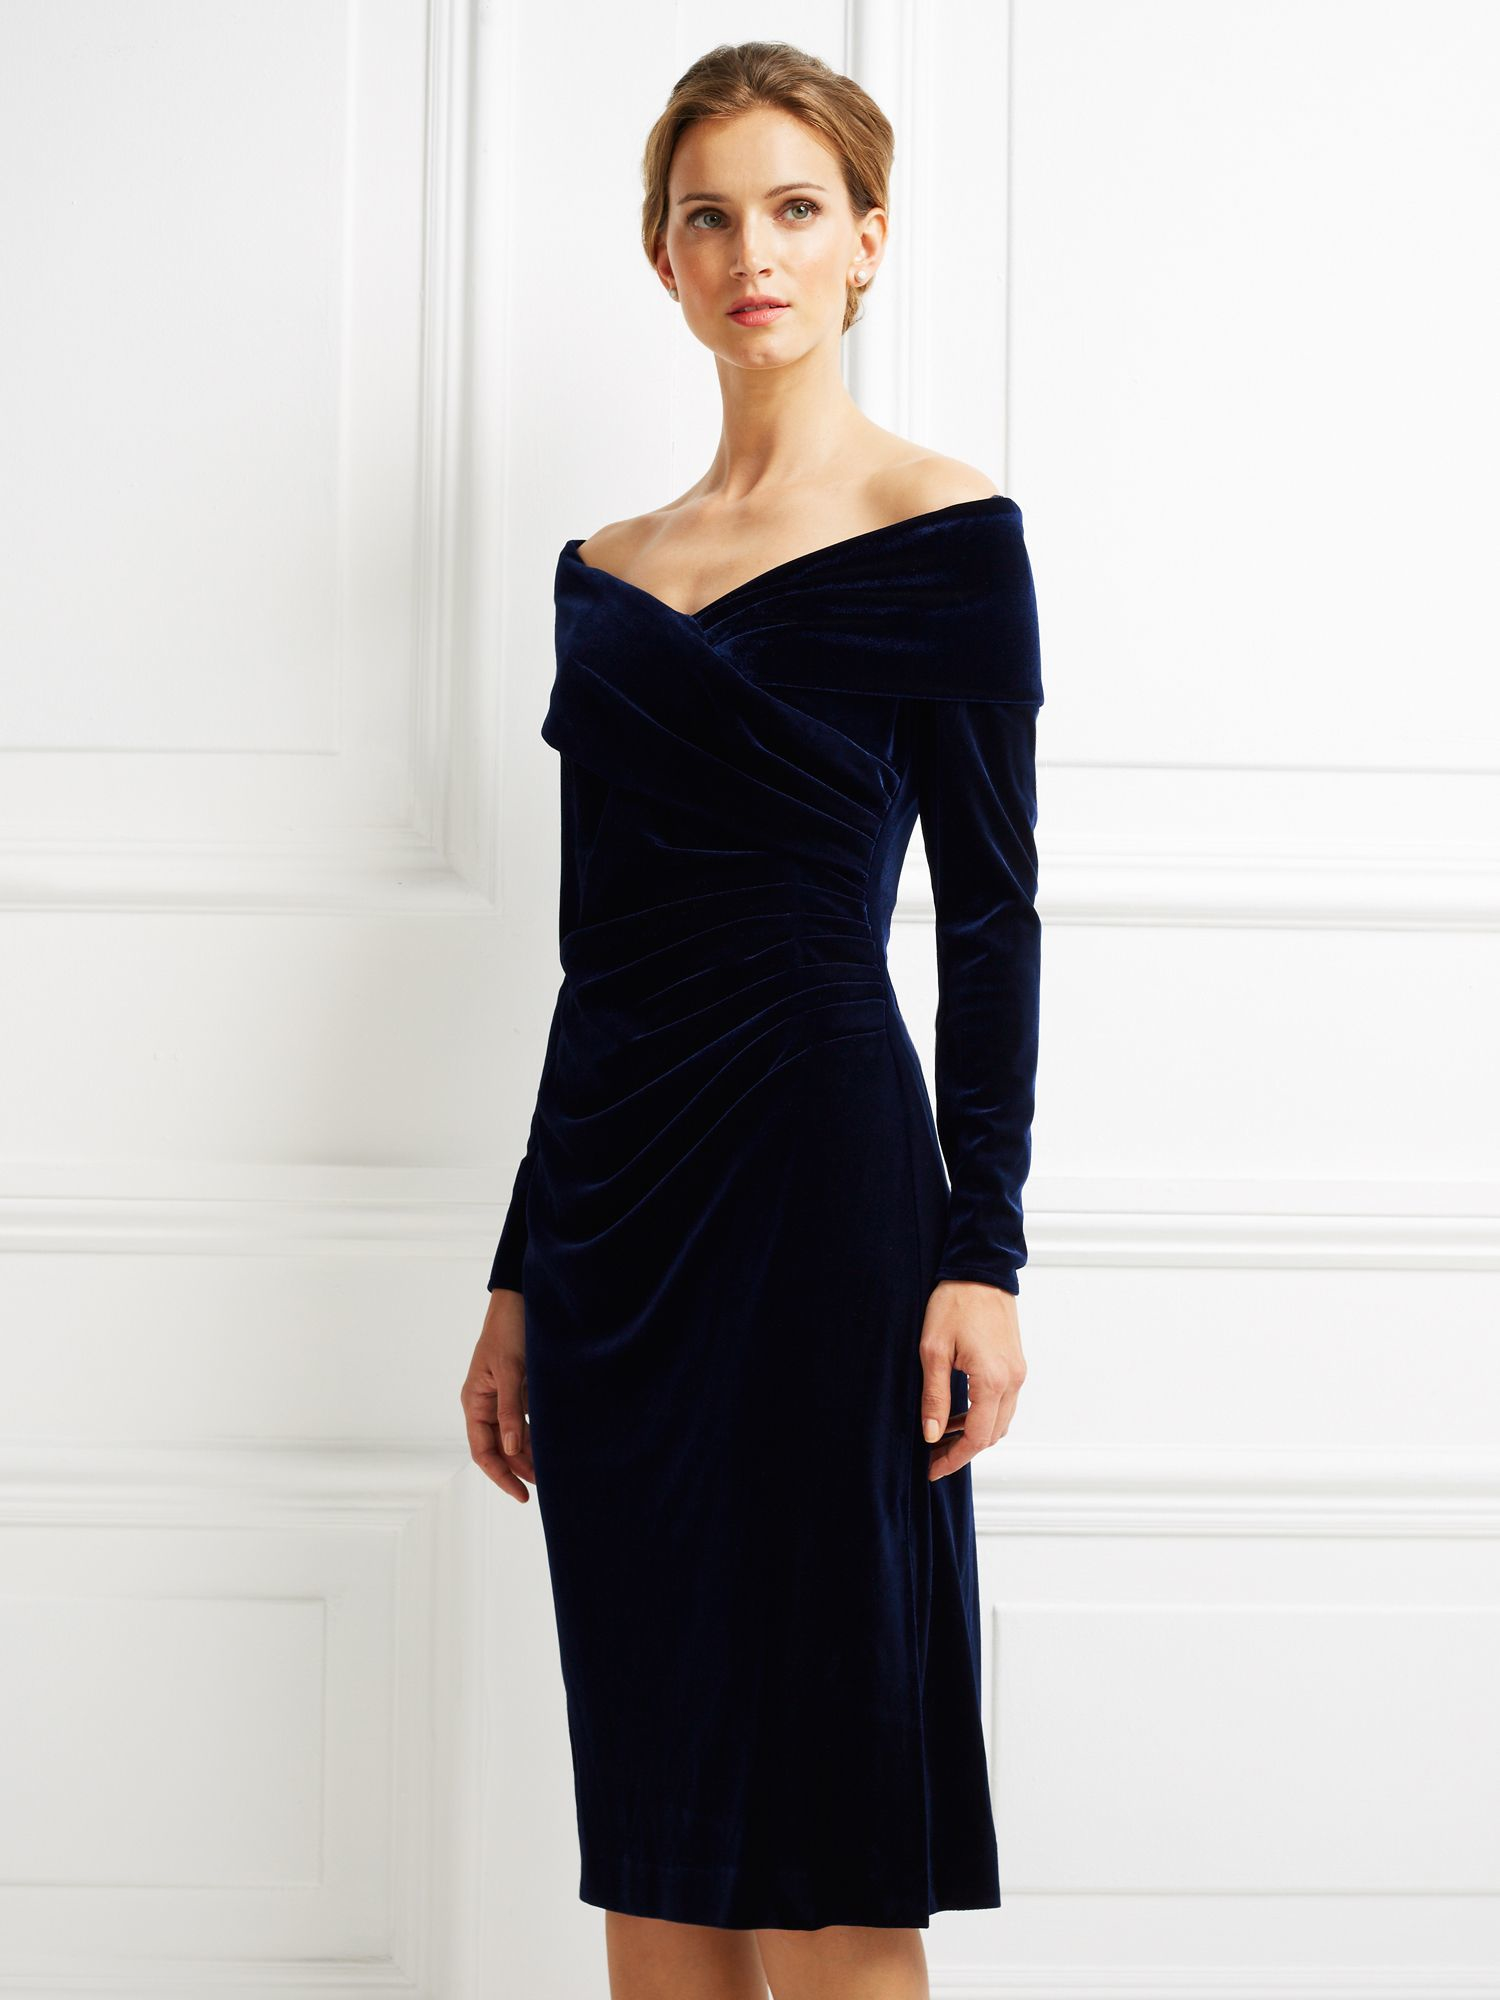 Jacques vert Velvet  Bardot Cocktail  Dress  in Black Lyst